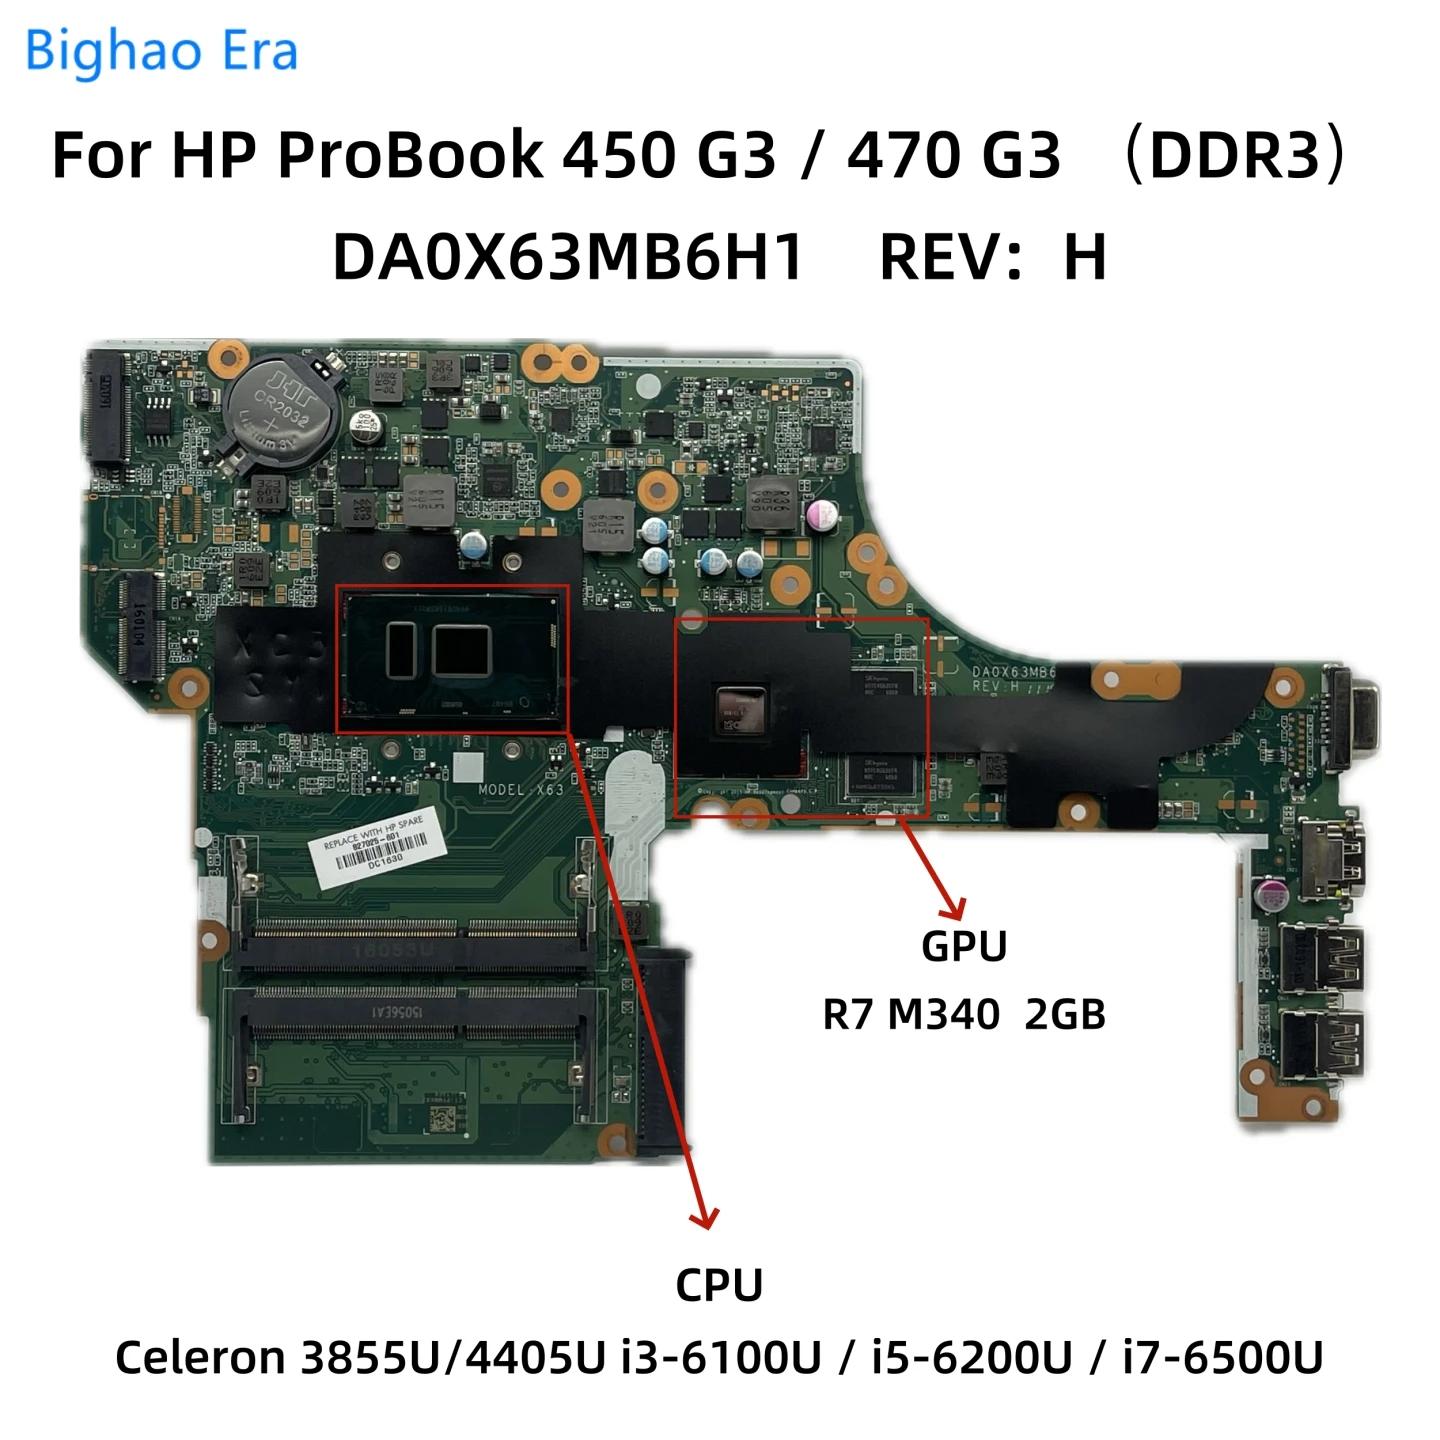 HP ProBook 450 G3 470 G3 Ʈ , DA0X63MB6H1, 3855U i3-6100U i5-6200U i7-6500U, CPU R7 M340, 2GB GPU 827026-601